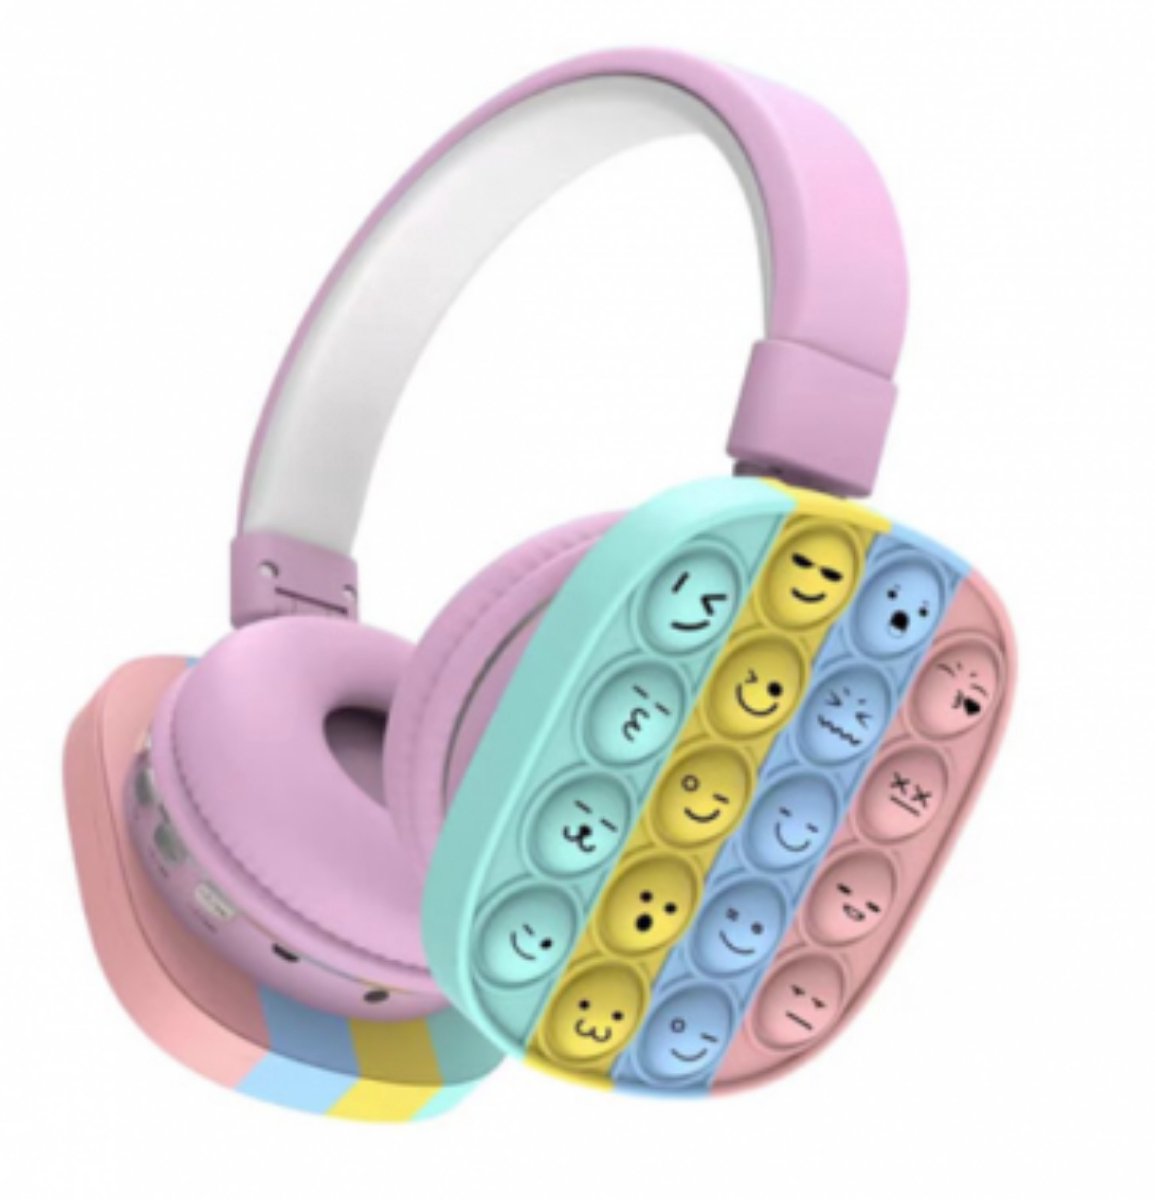 Koptelefoon Pop it fidget met smiley's gezichten voor kinderen - Bluetooth Koptelefoon voor kinderen - Regenboog Hoofdtelefoon - Headset - Roze